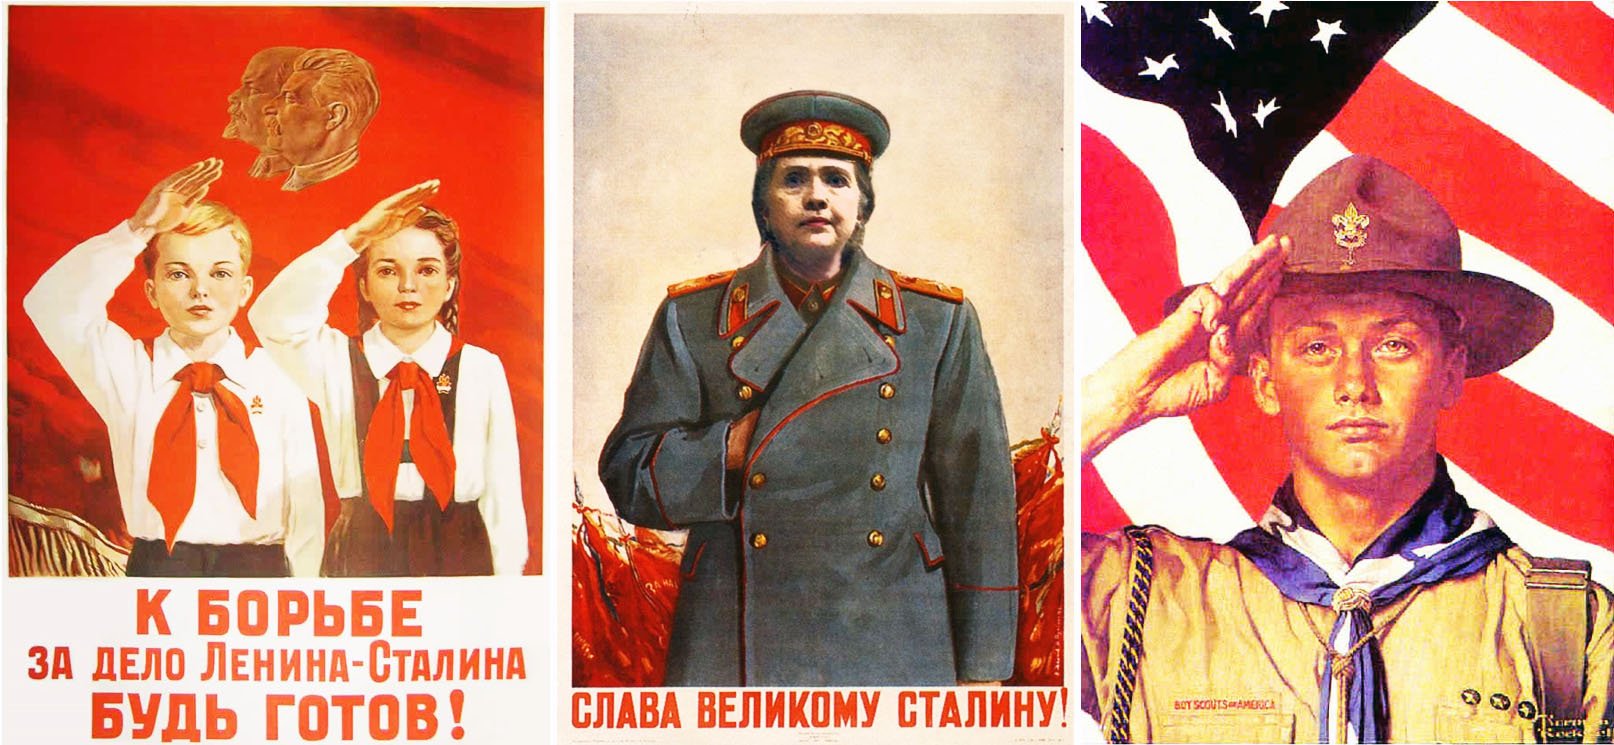 Лежит будь готов. К борьбе за дело Ленина-Сталина будь готов. Пионерские лозунги. Пионерия плакаты. К борьбе за дело Ленина-Сталина будь готов плакат.